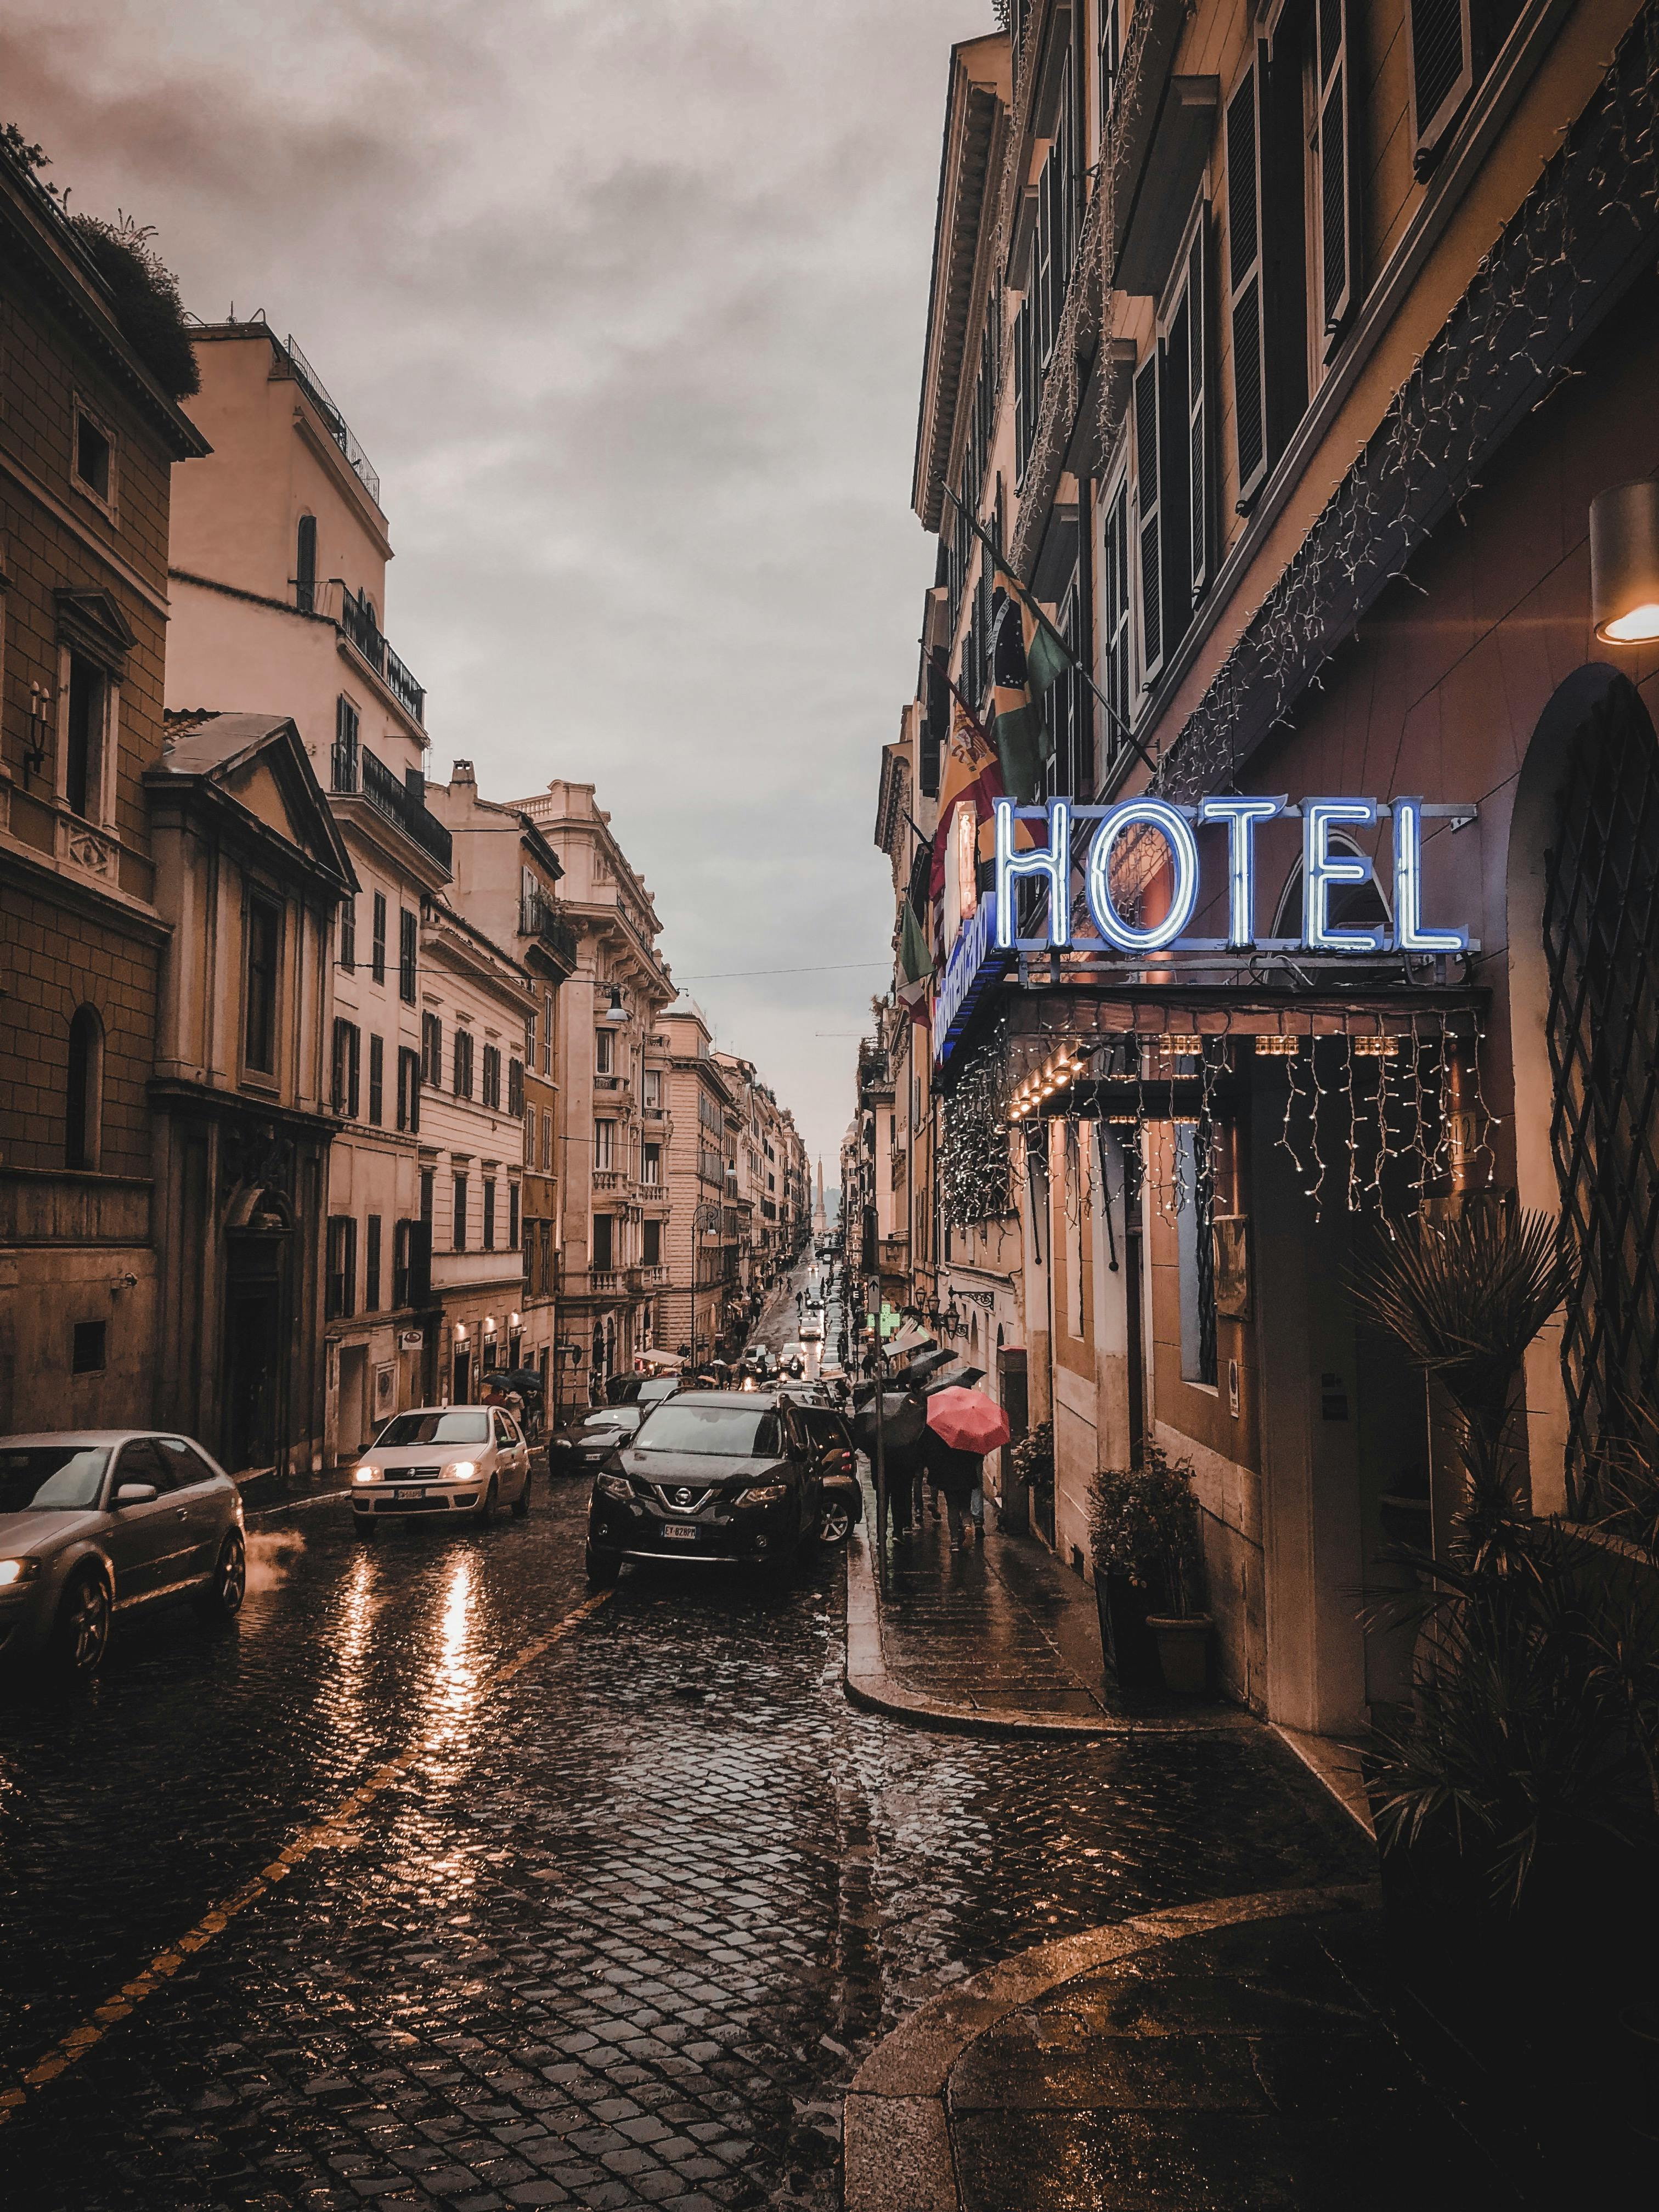 Ein Hotel | Quelle: Pexels